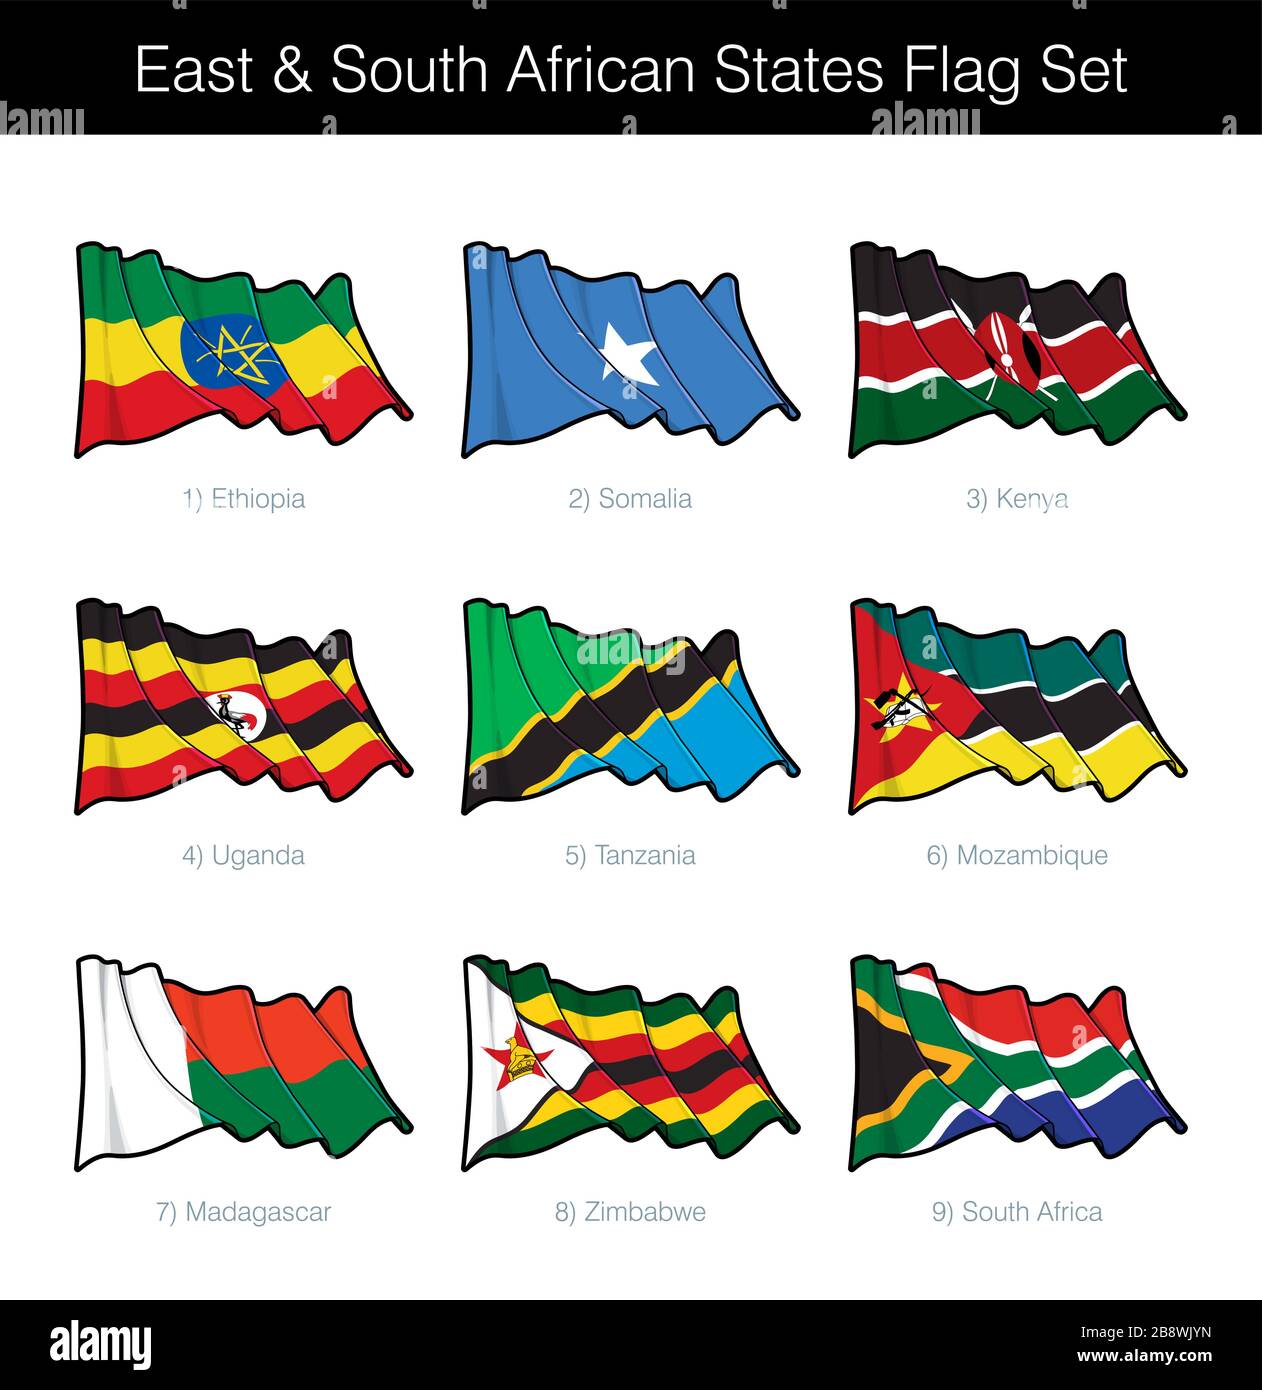 Estados del este y del sur de África ondeando el conjunto de banderas. El conjunto incluye las banderas de Etiopía, Somalia, Kenia, Uganda, Tanzania, Mozambique, Madagascar, Zimba Ilustración del Vector